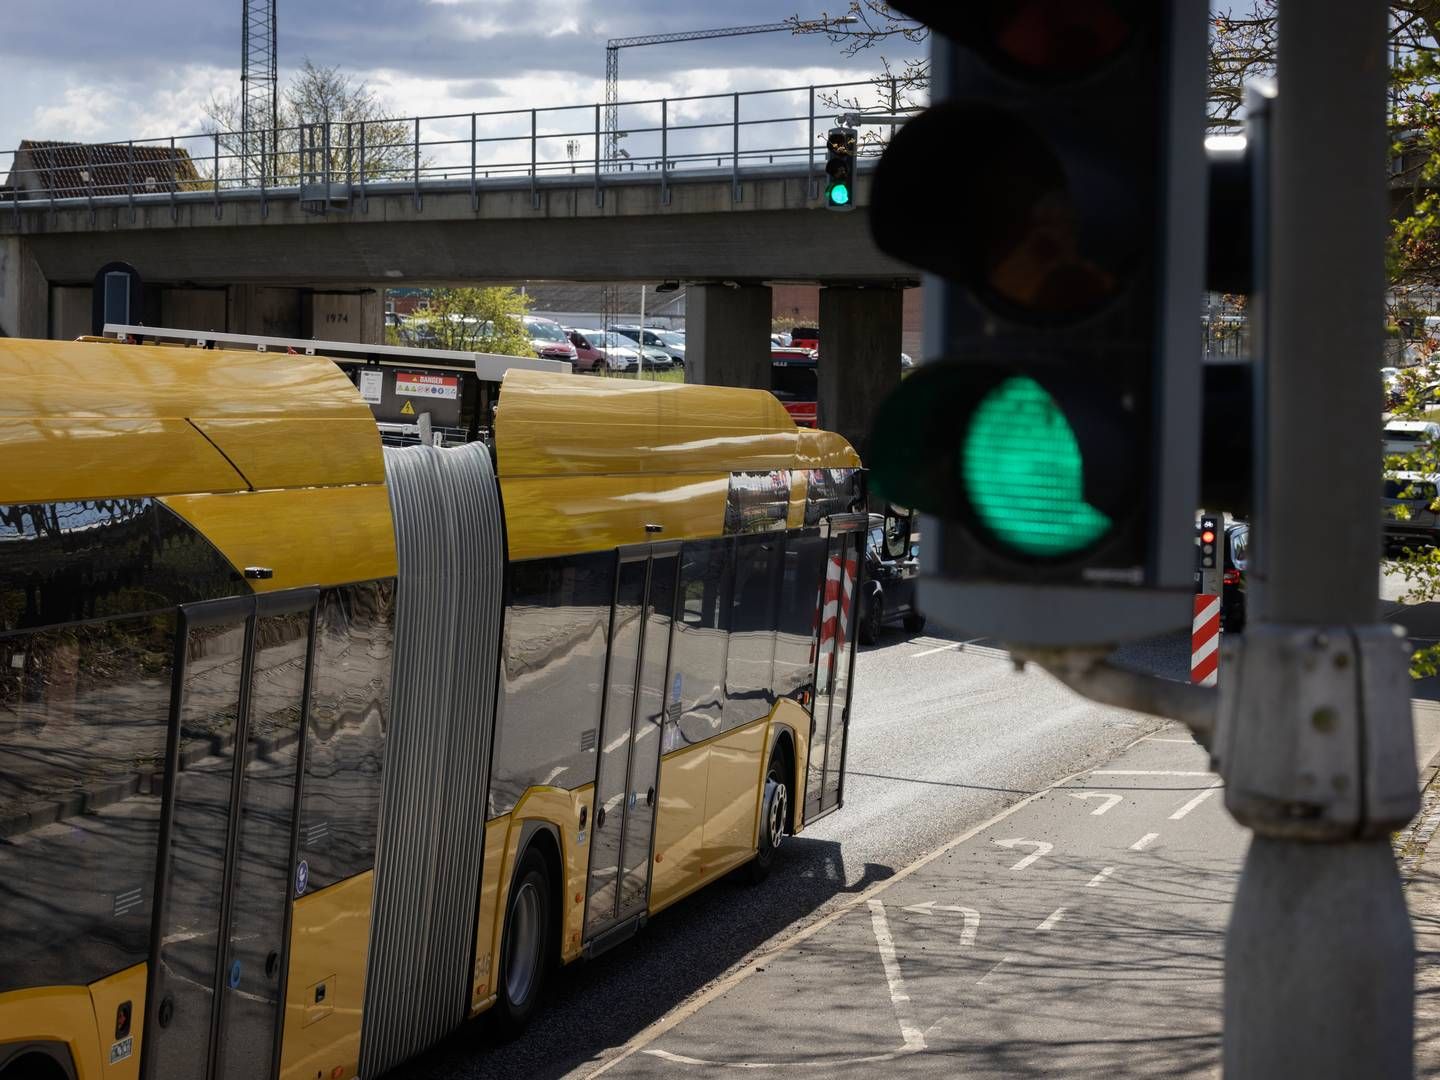 Mange busruter nedlægges lige nu, erkender transportministeren, som ikke vil give akut støtte. | Foto: Casper Dalhoff/Ritzau Scanpix